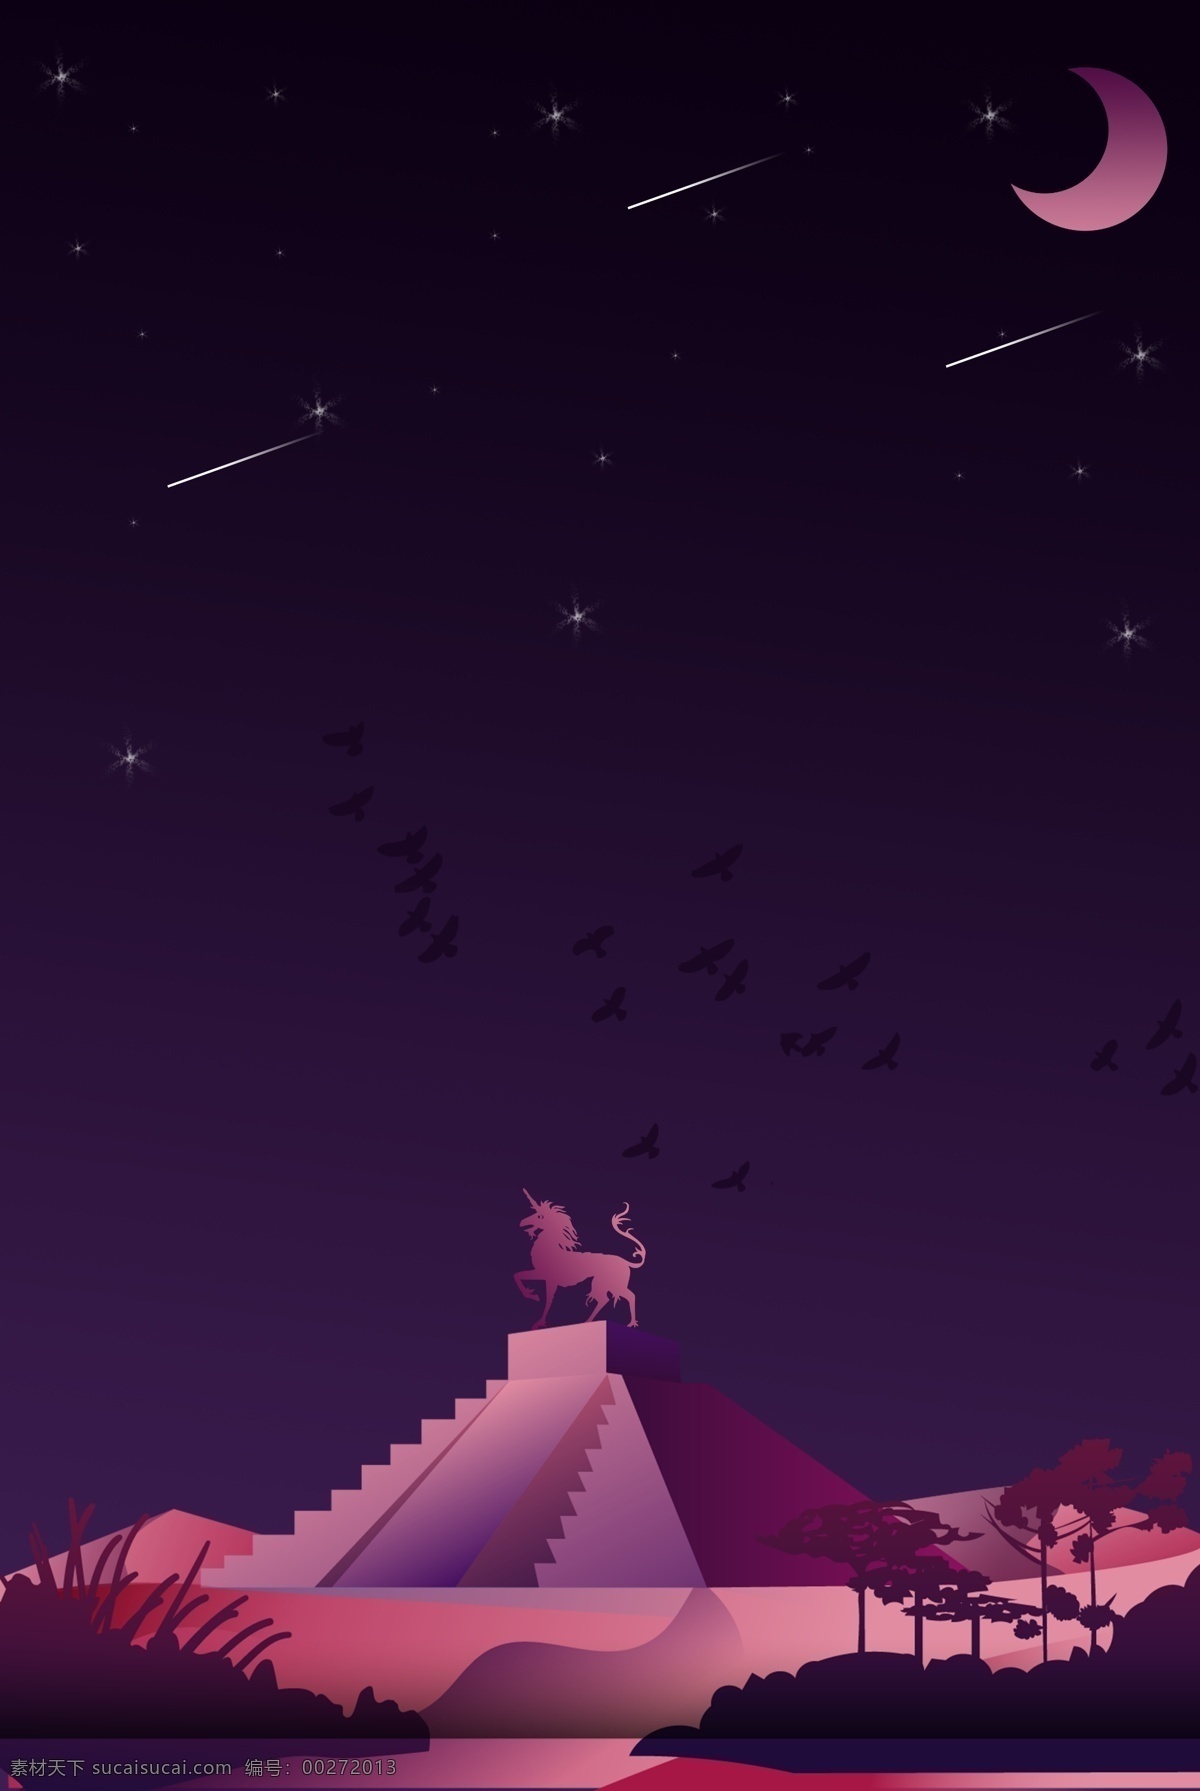 紫色 渐变 金字塔 独角兽 银河 星空 背景 海报 流星 月亮 飞鸟 梦幻